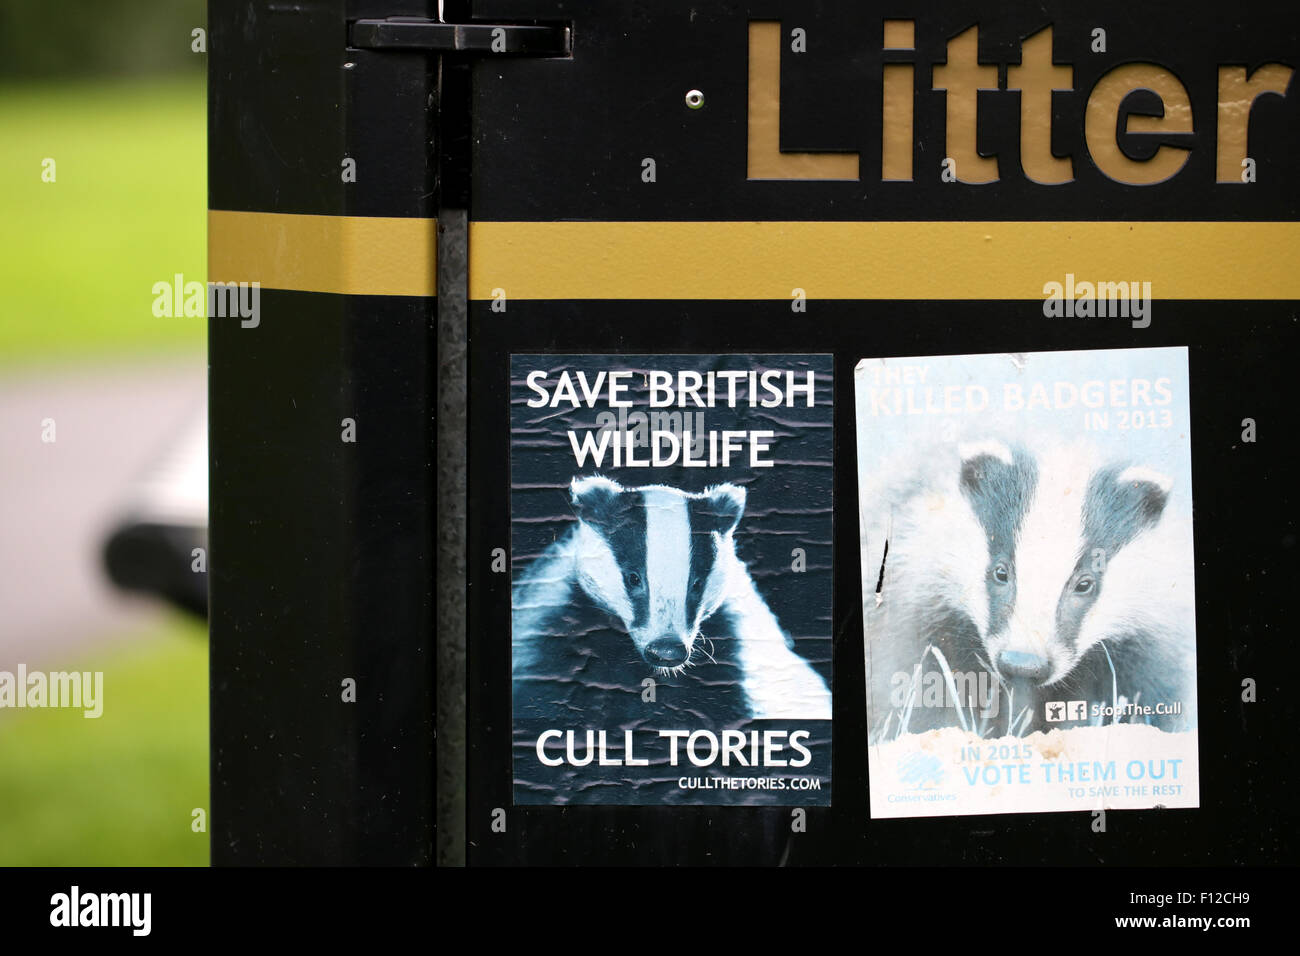 Une manifestation à l'appui de l'affiche de Wildflife britannique par rapport à l'abattage du blaireau dans le sud-ouest de l'Angleterre. C'est liée à la propagation de BTB aux bovins. Banque D'Images